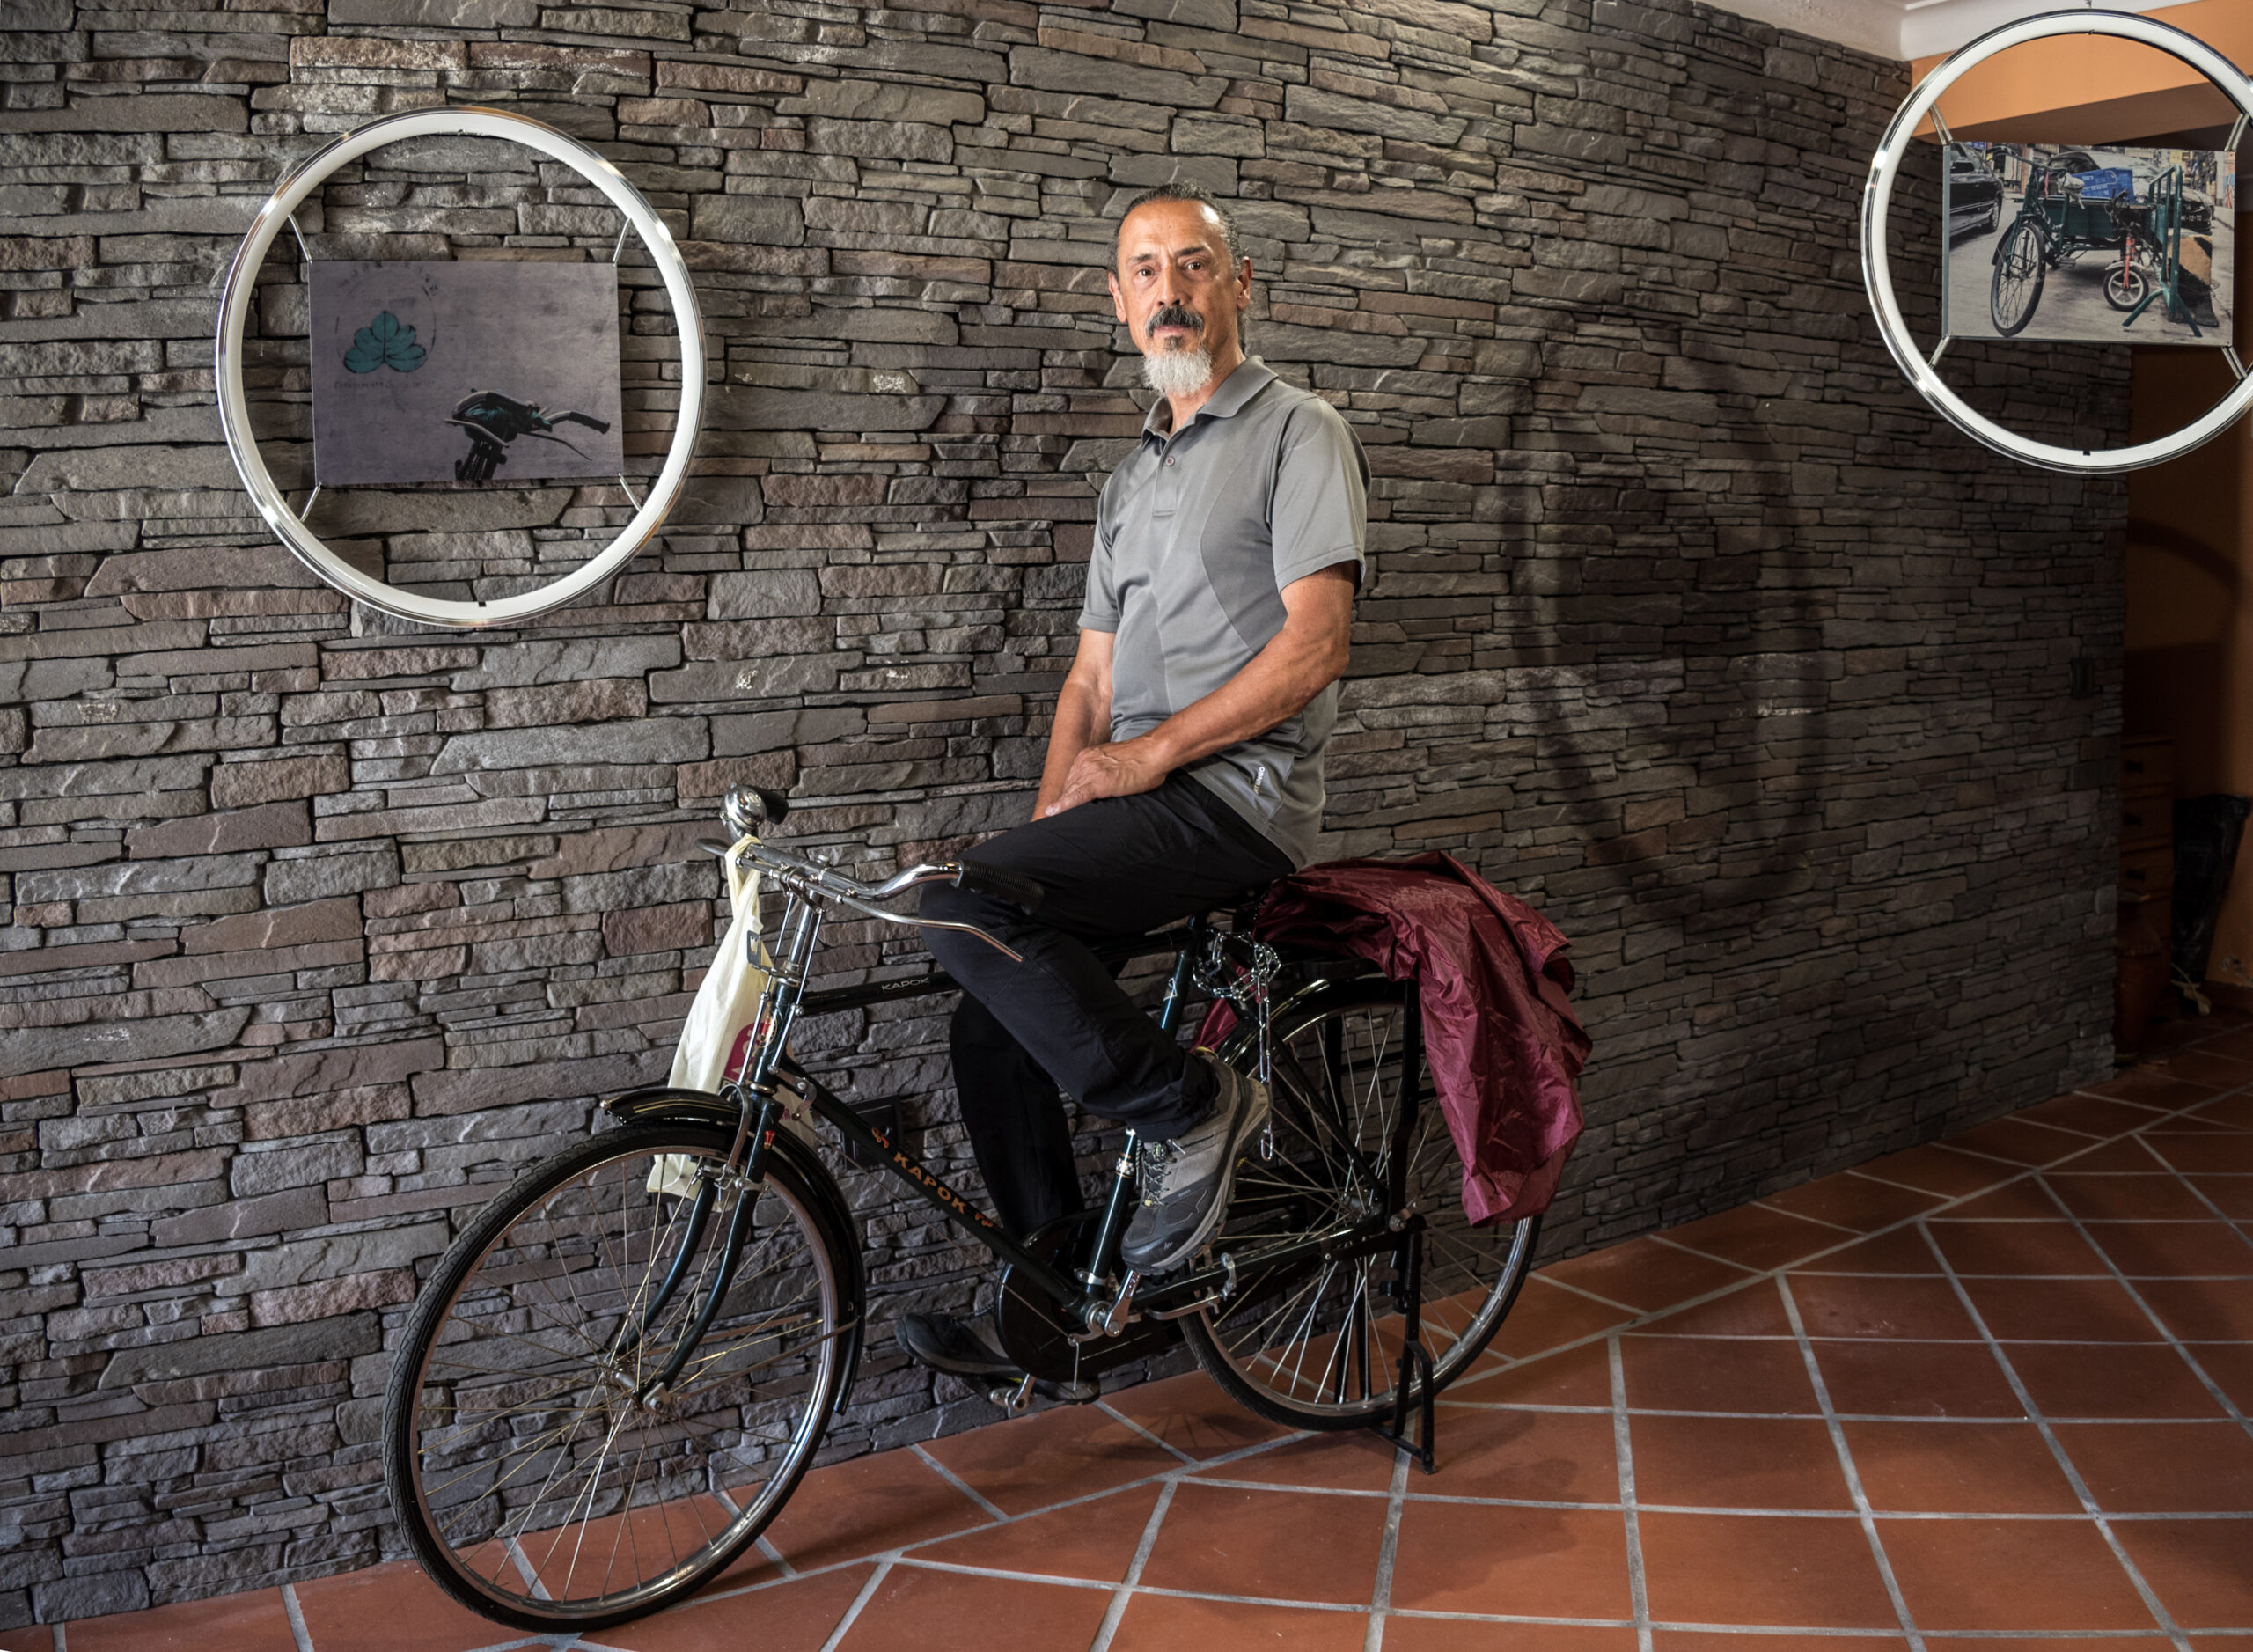 Fotografia | Exposição “Bicicletas de Macau” patente em Castelo Branco